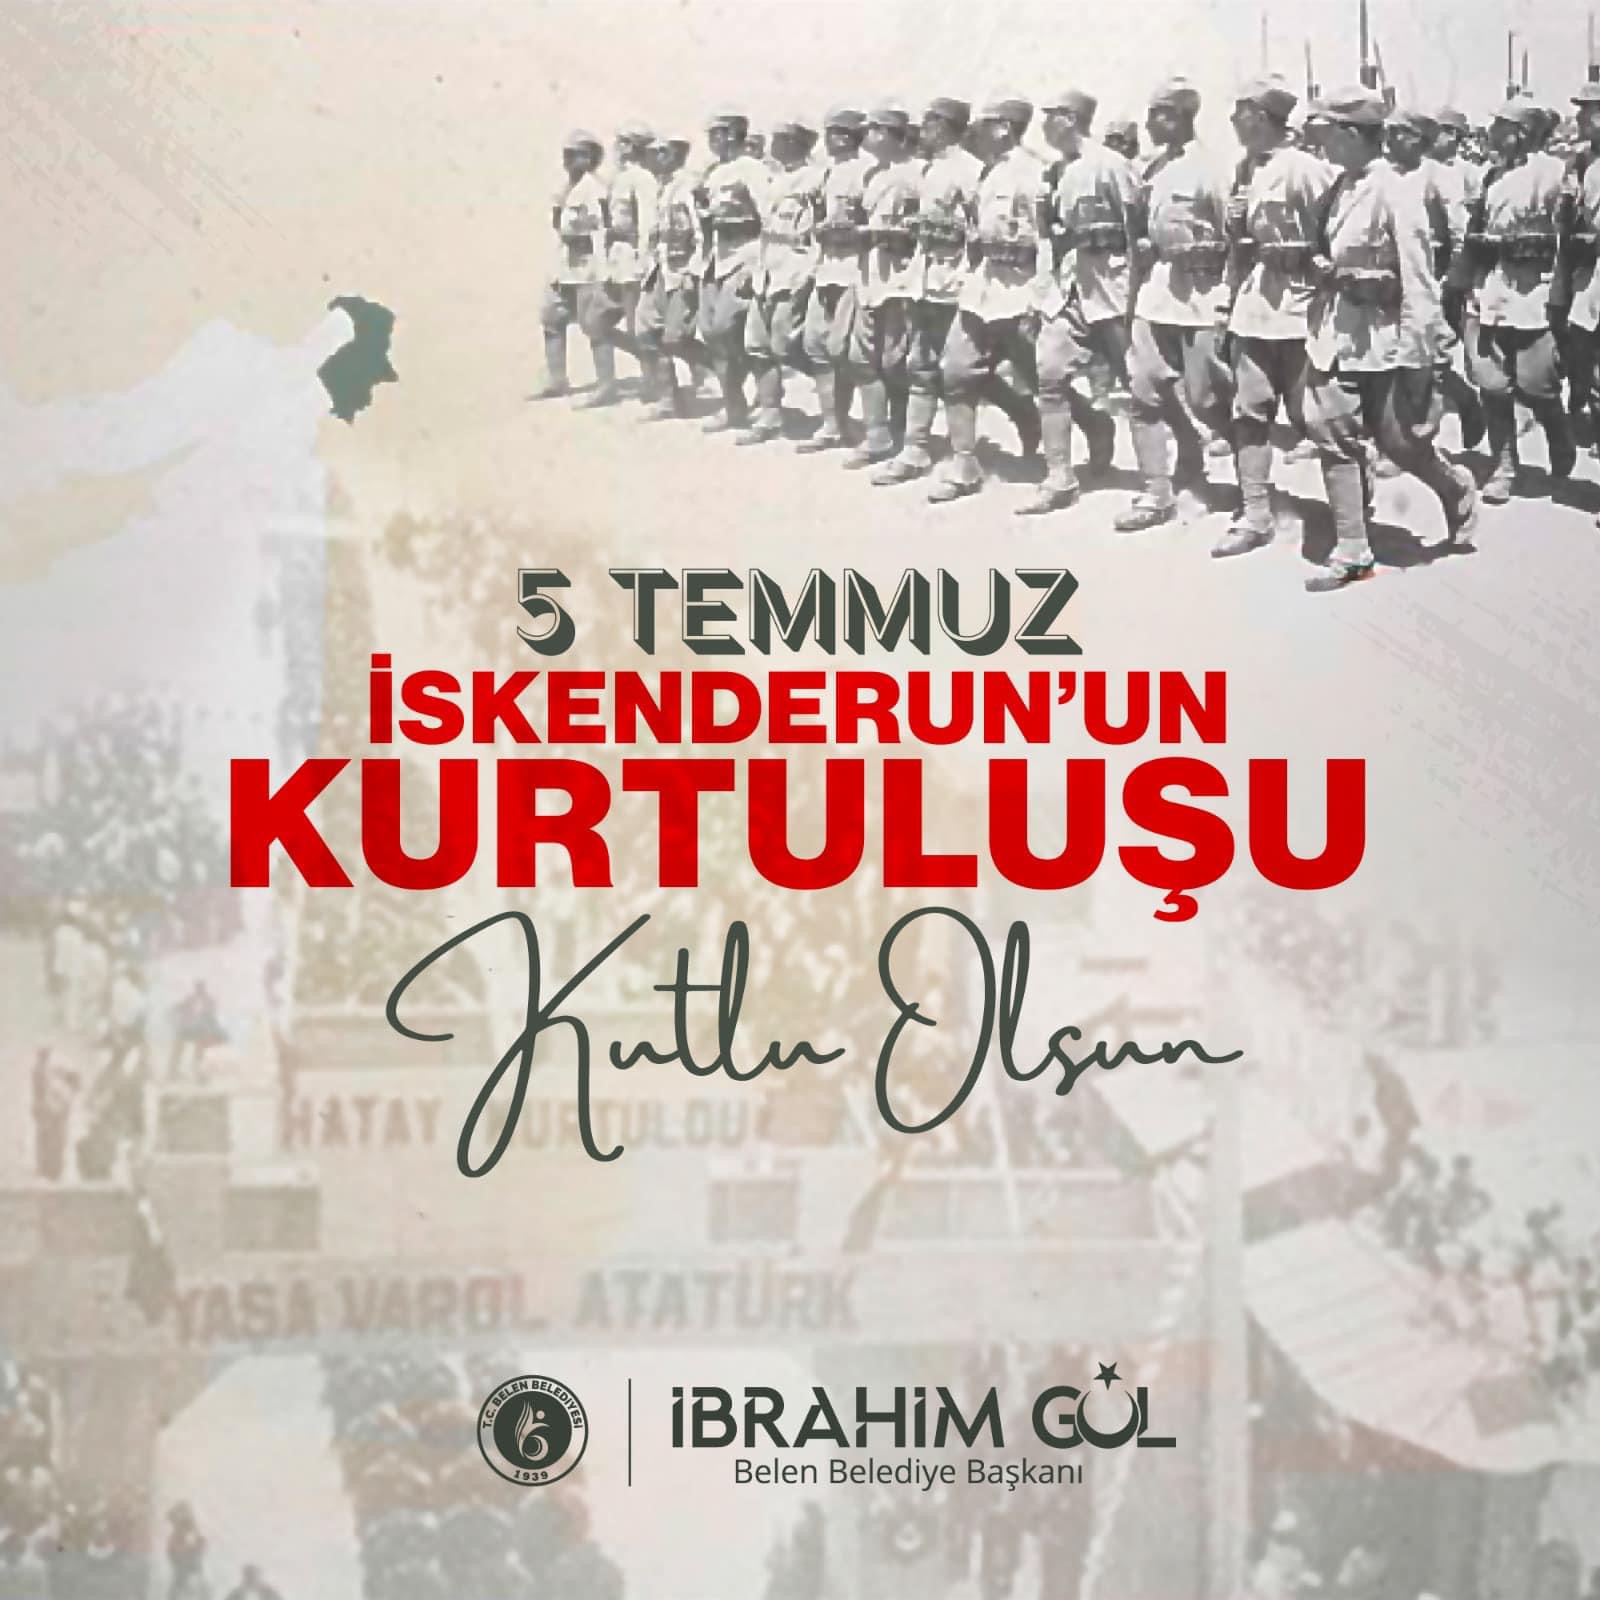 Başkan Ibrahim Gül’den 5 Temmuz Mesajı